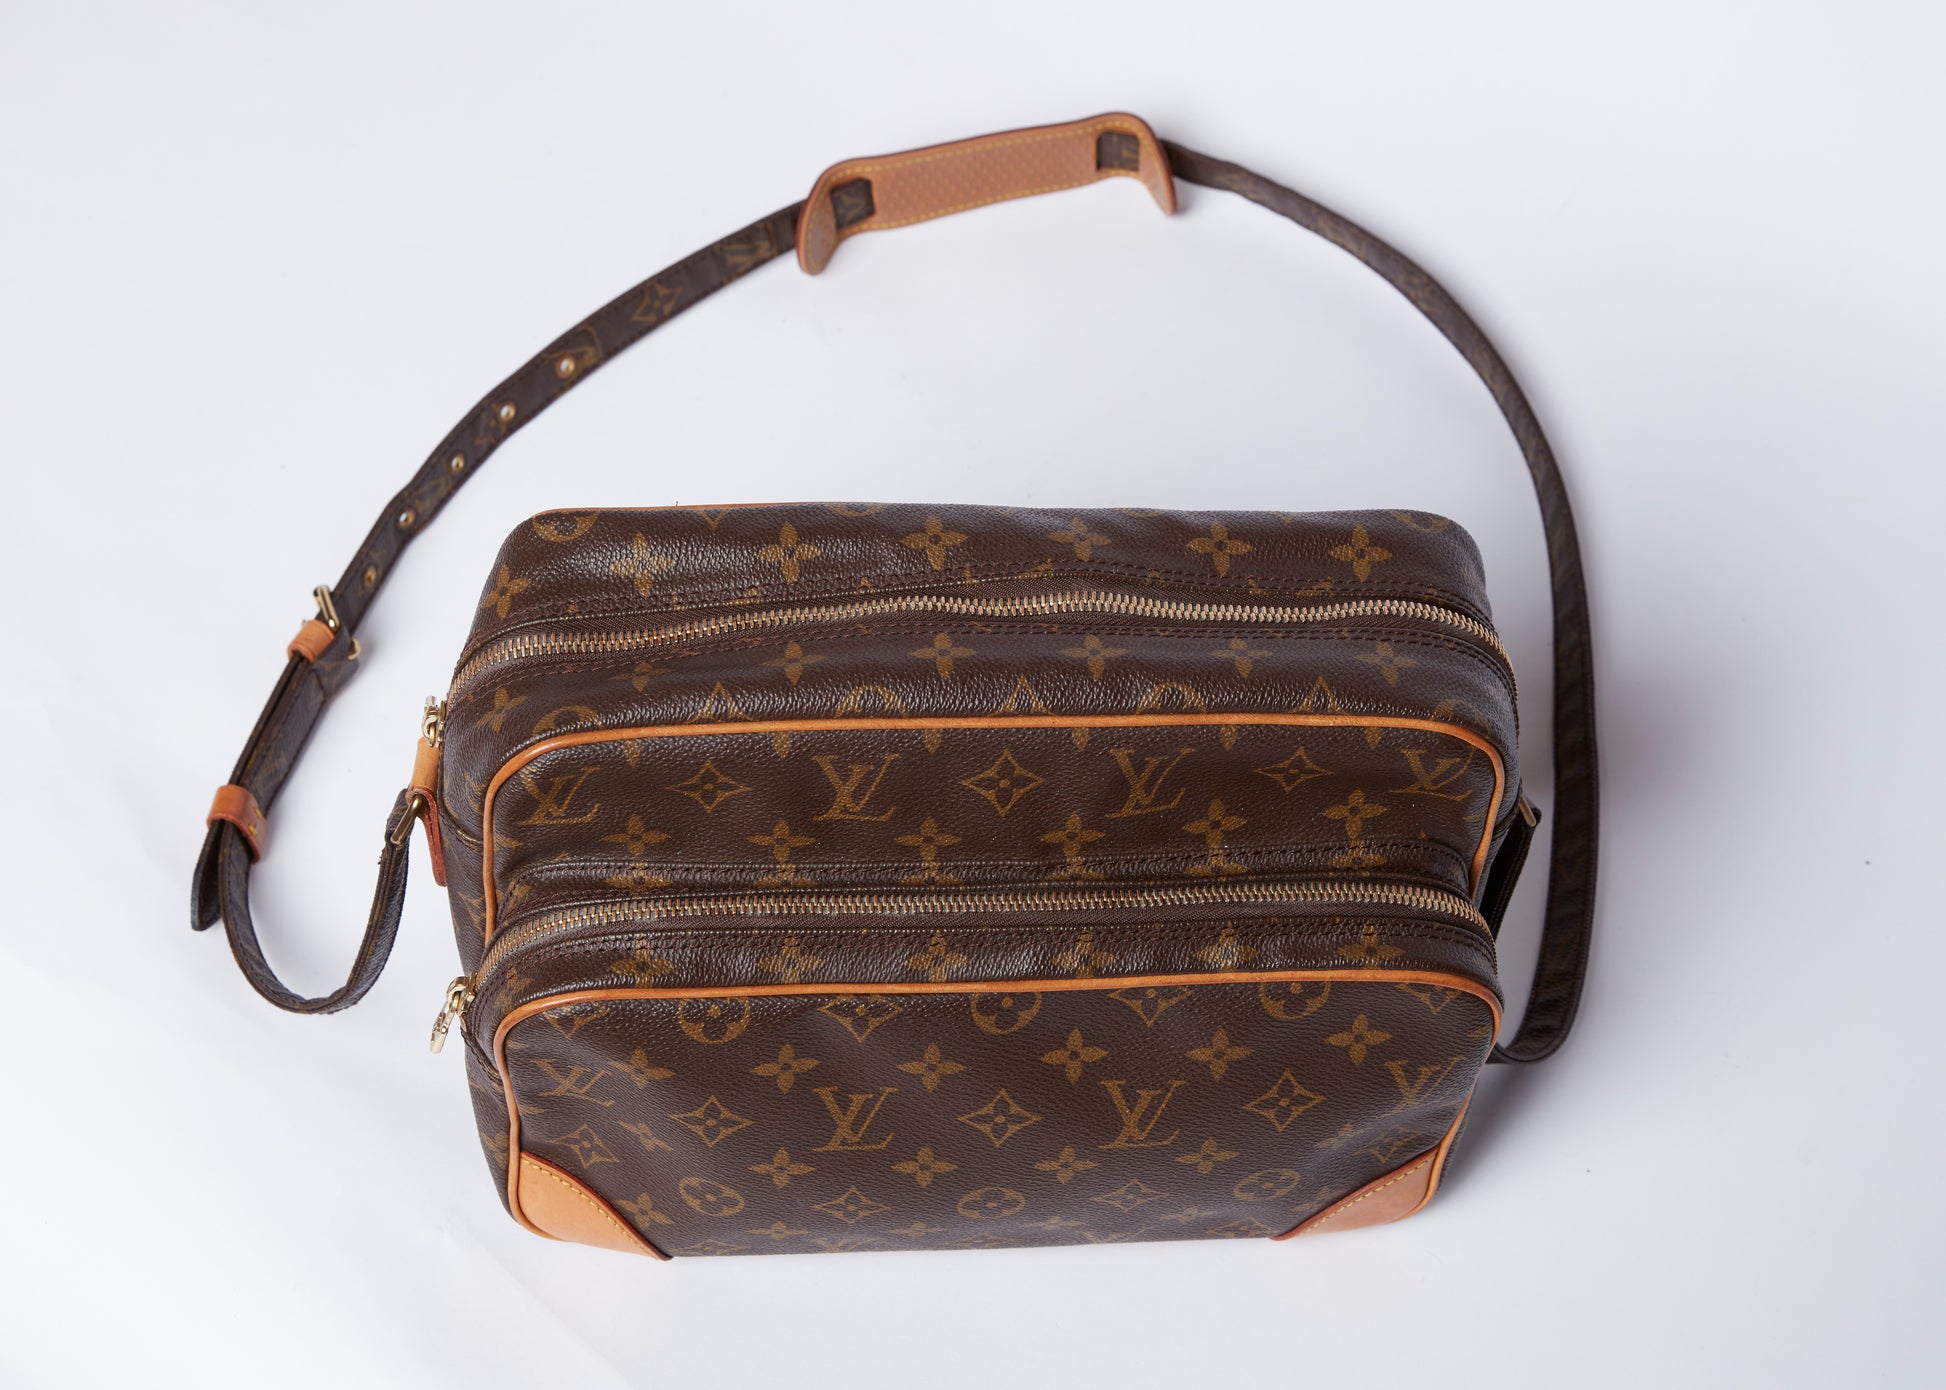 Auth Louis Vuitton Nile Crossbody Bag #1158L20